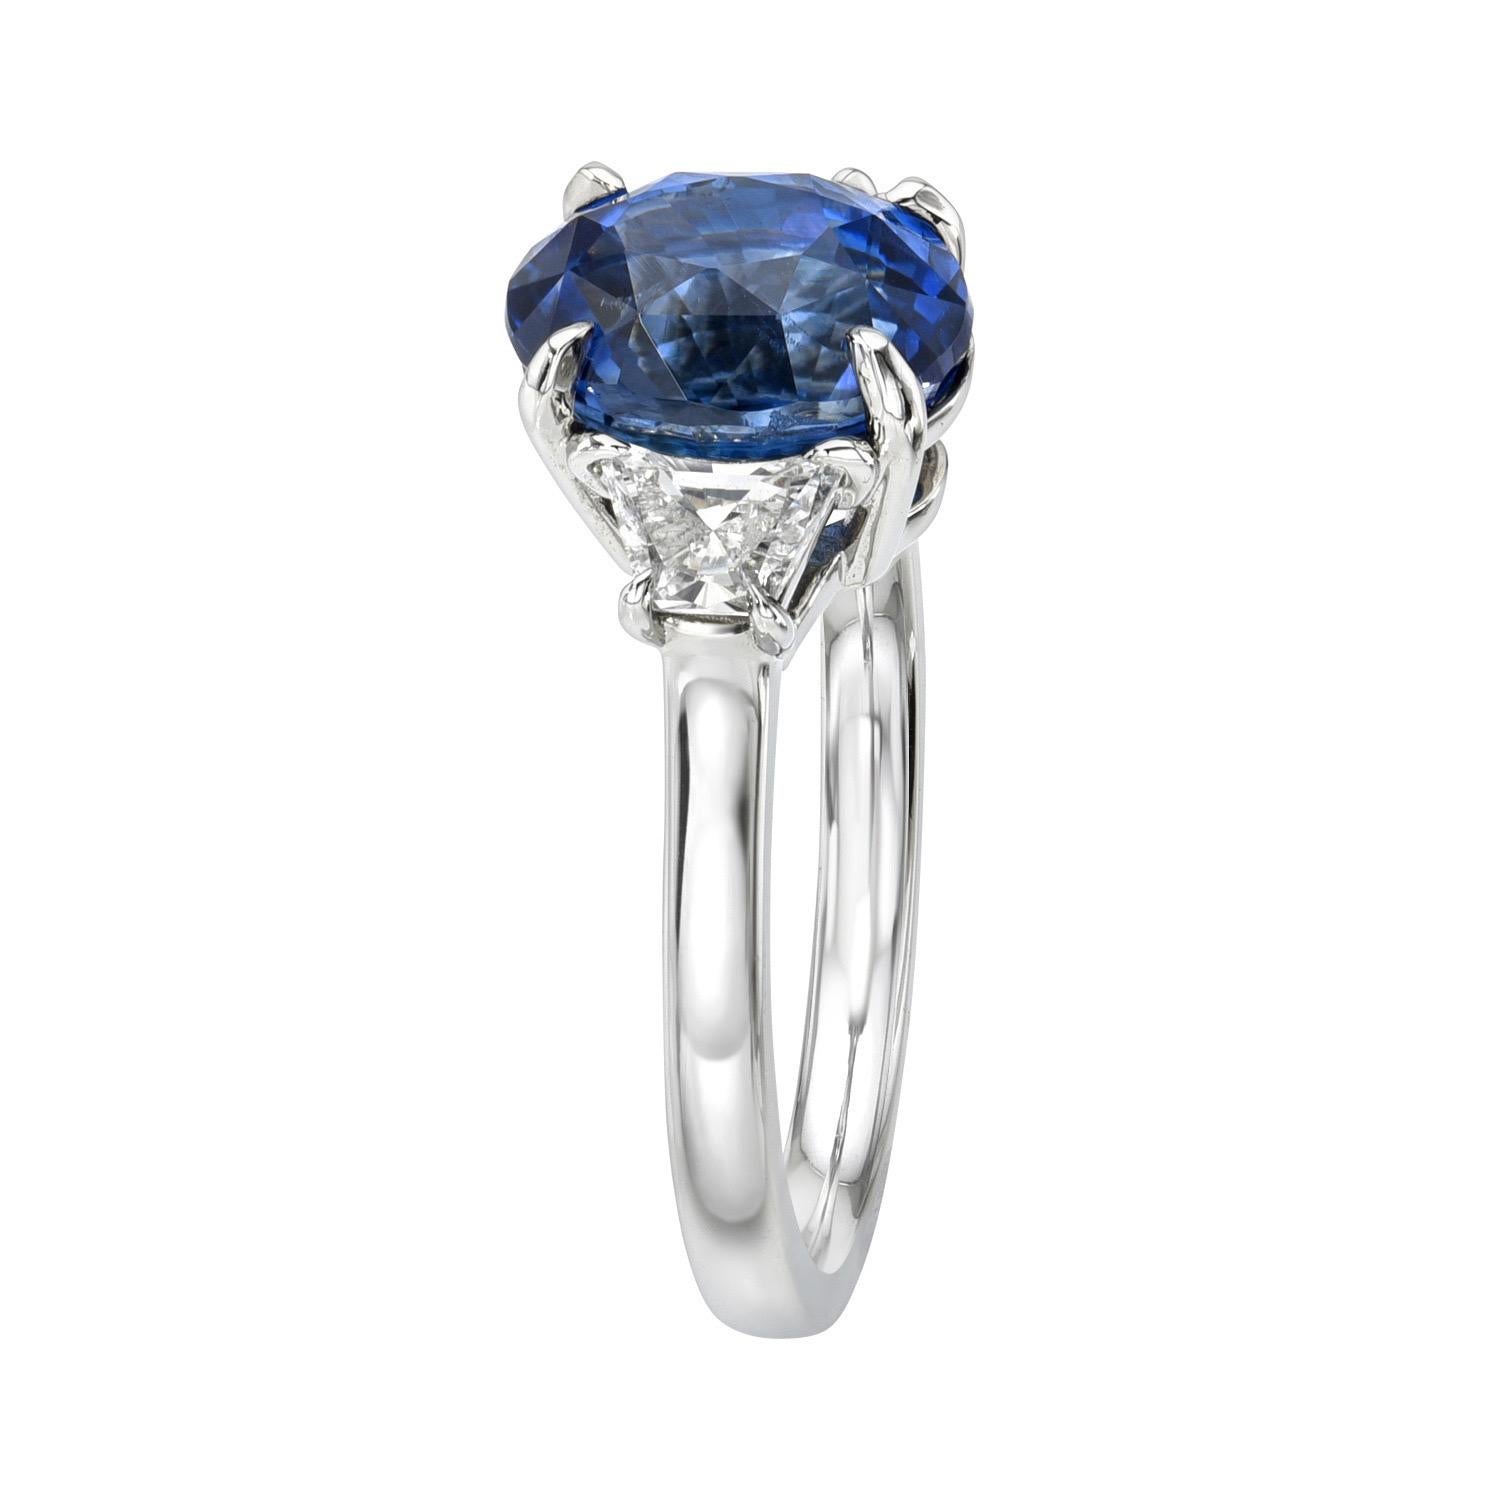 Ungeheizter, ovaler, dreisteiniger Platinring mit 3,47 Karat Ceylon Blue Sapphire, flankiert von einem Paar 0,45 Karat, F/VS2-SI1 Crescent Trapezoid Diamanten.
Ring Größe 6. Die Größenänderung ist auf Anfrage möglich.
Der CDC-Edelsteinbericht ist